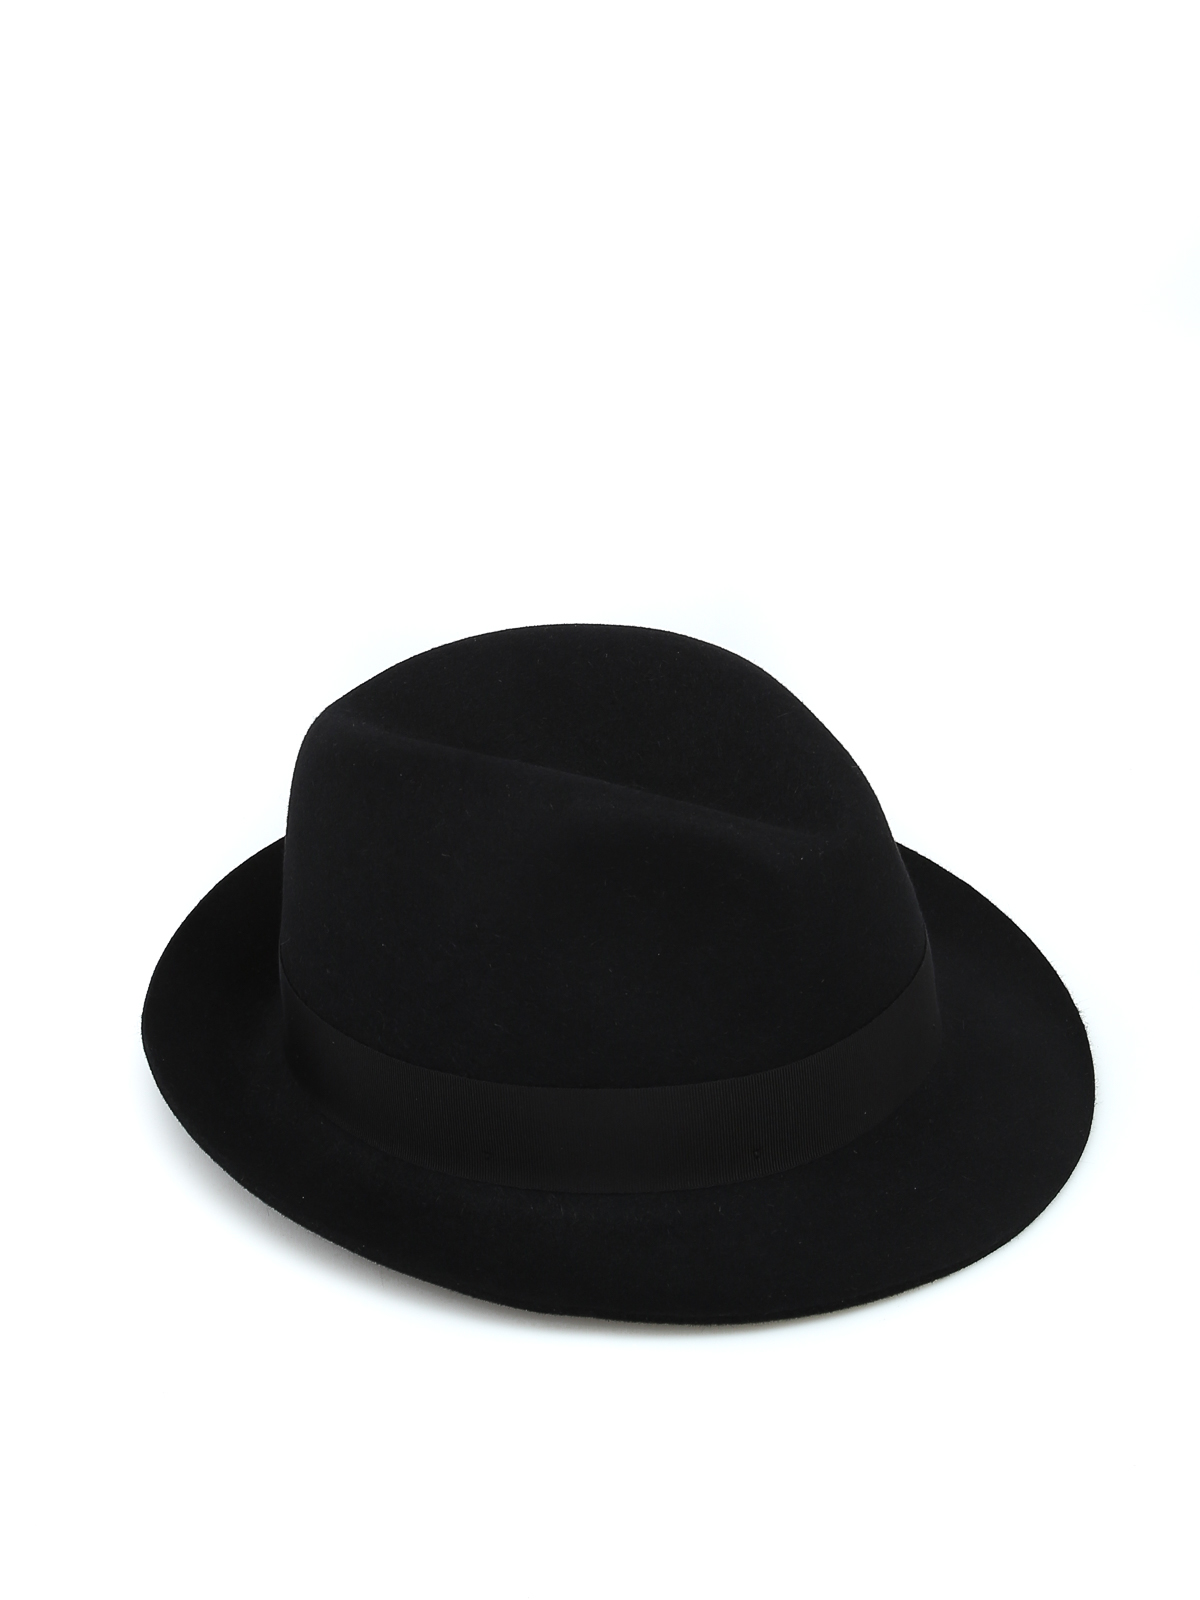 Borsalino Grosgrain Band Black Felt Hat